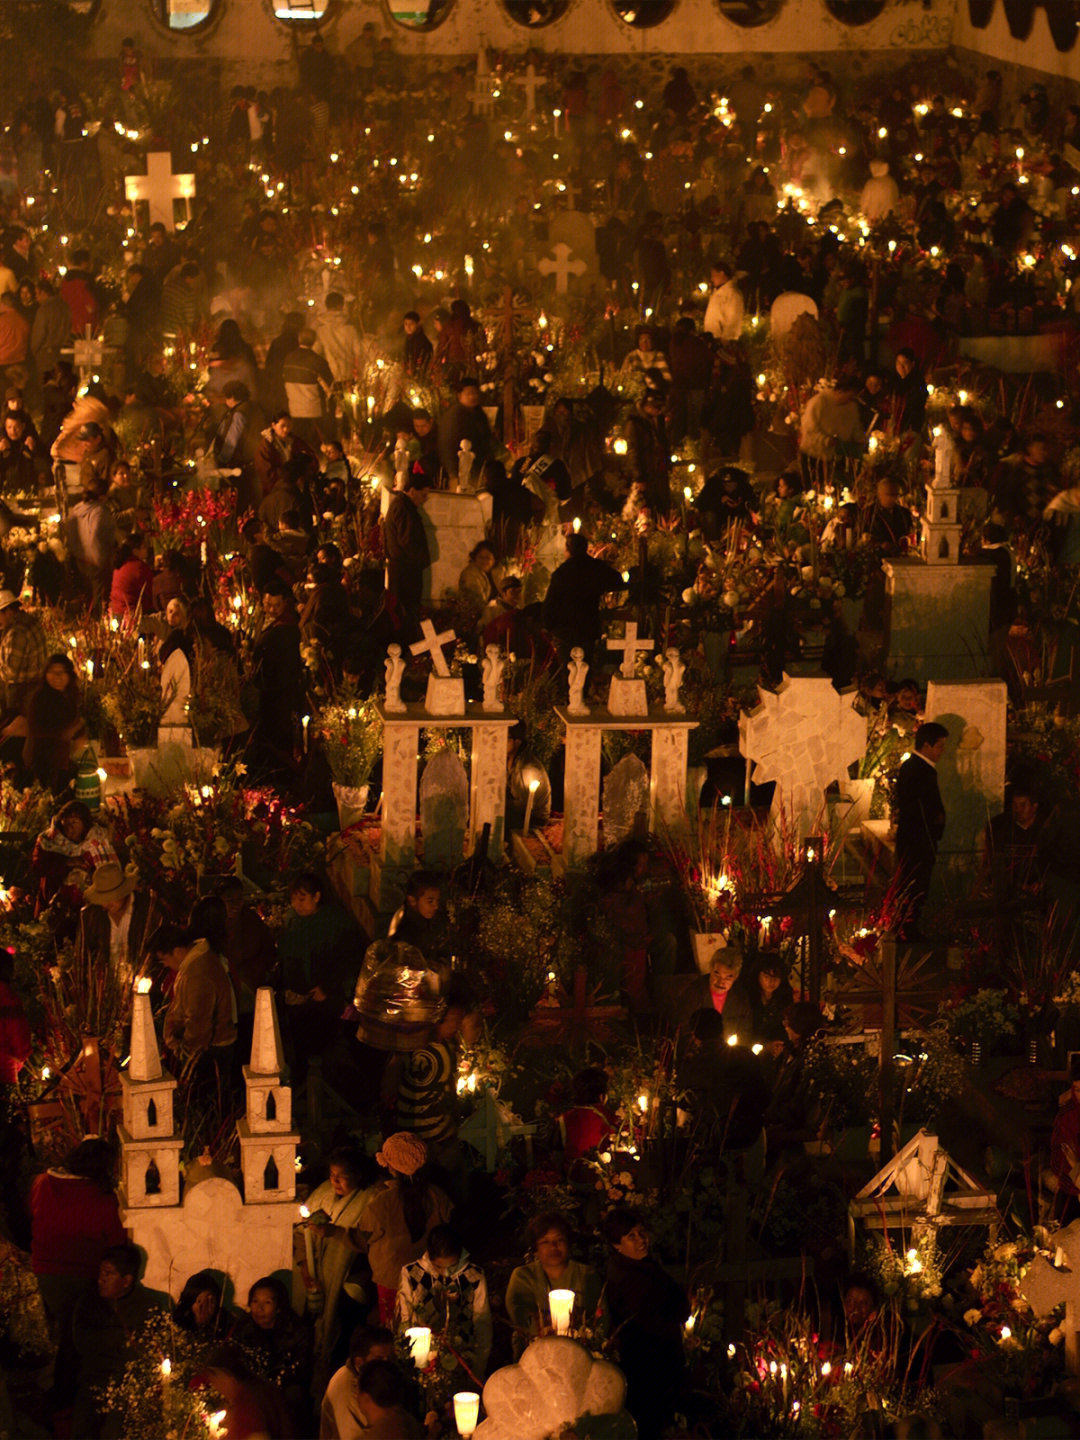 墨西哥狂欢节日期图片